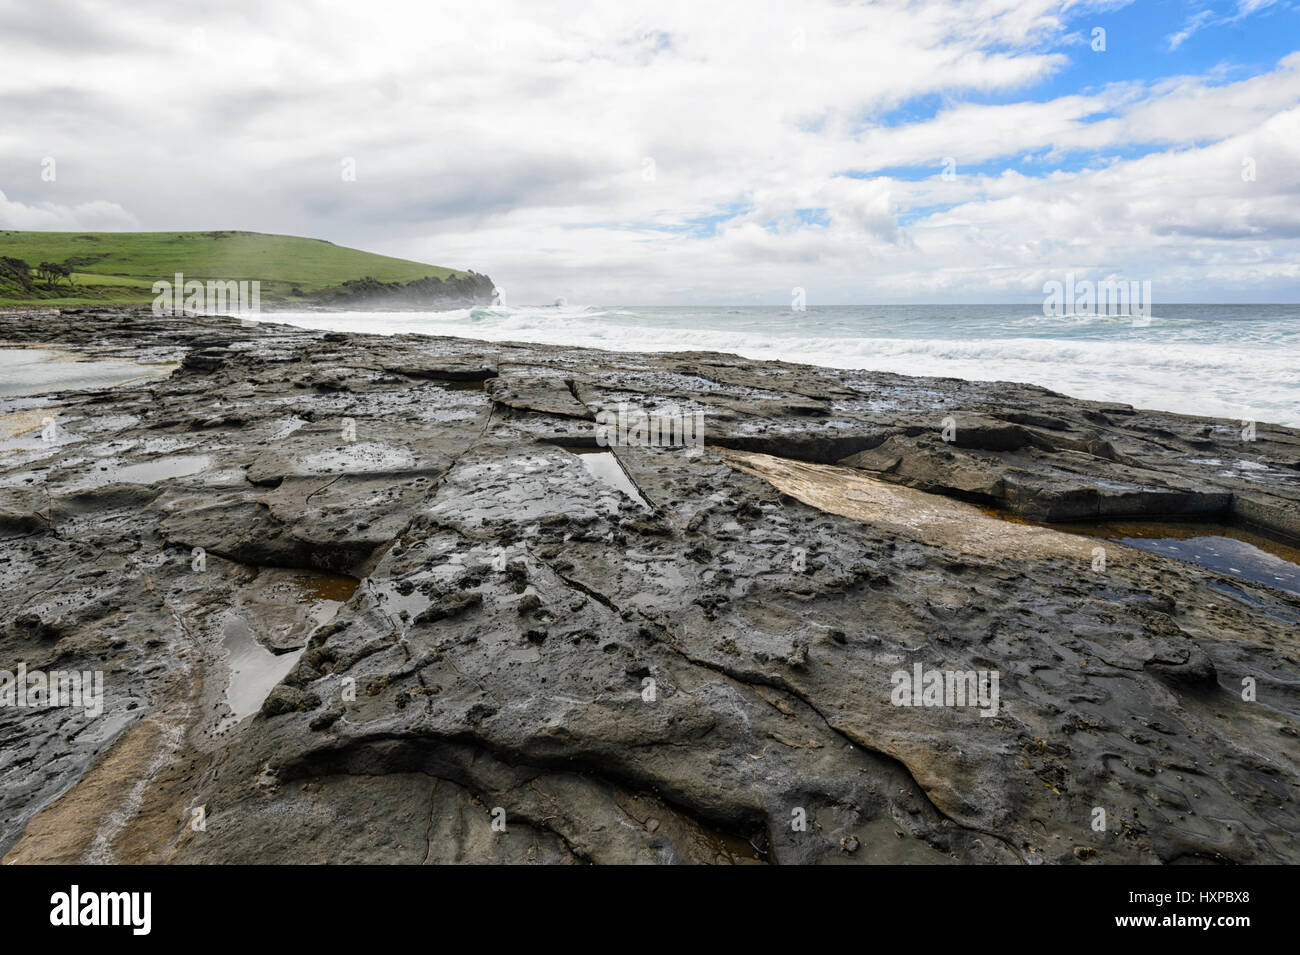 Stormy day at Gerroa Headland, Black Head, Illawarra Coast, New South Wales, NSW, Australia Stock Photo